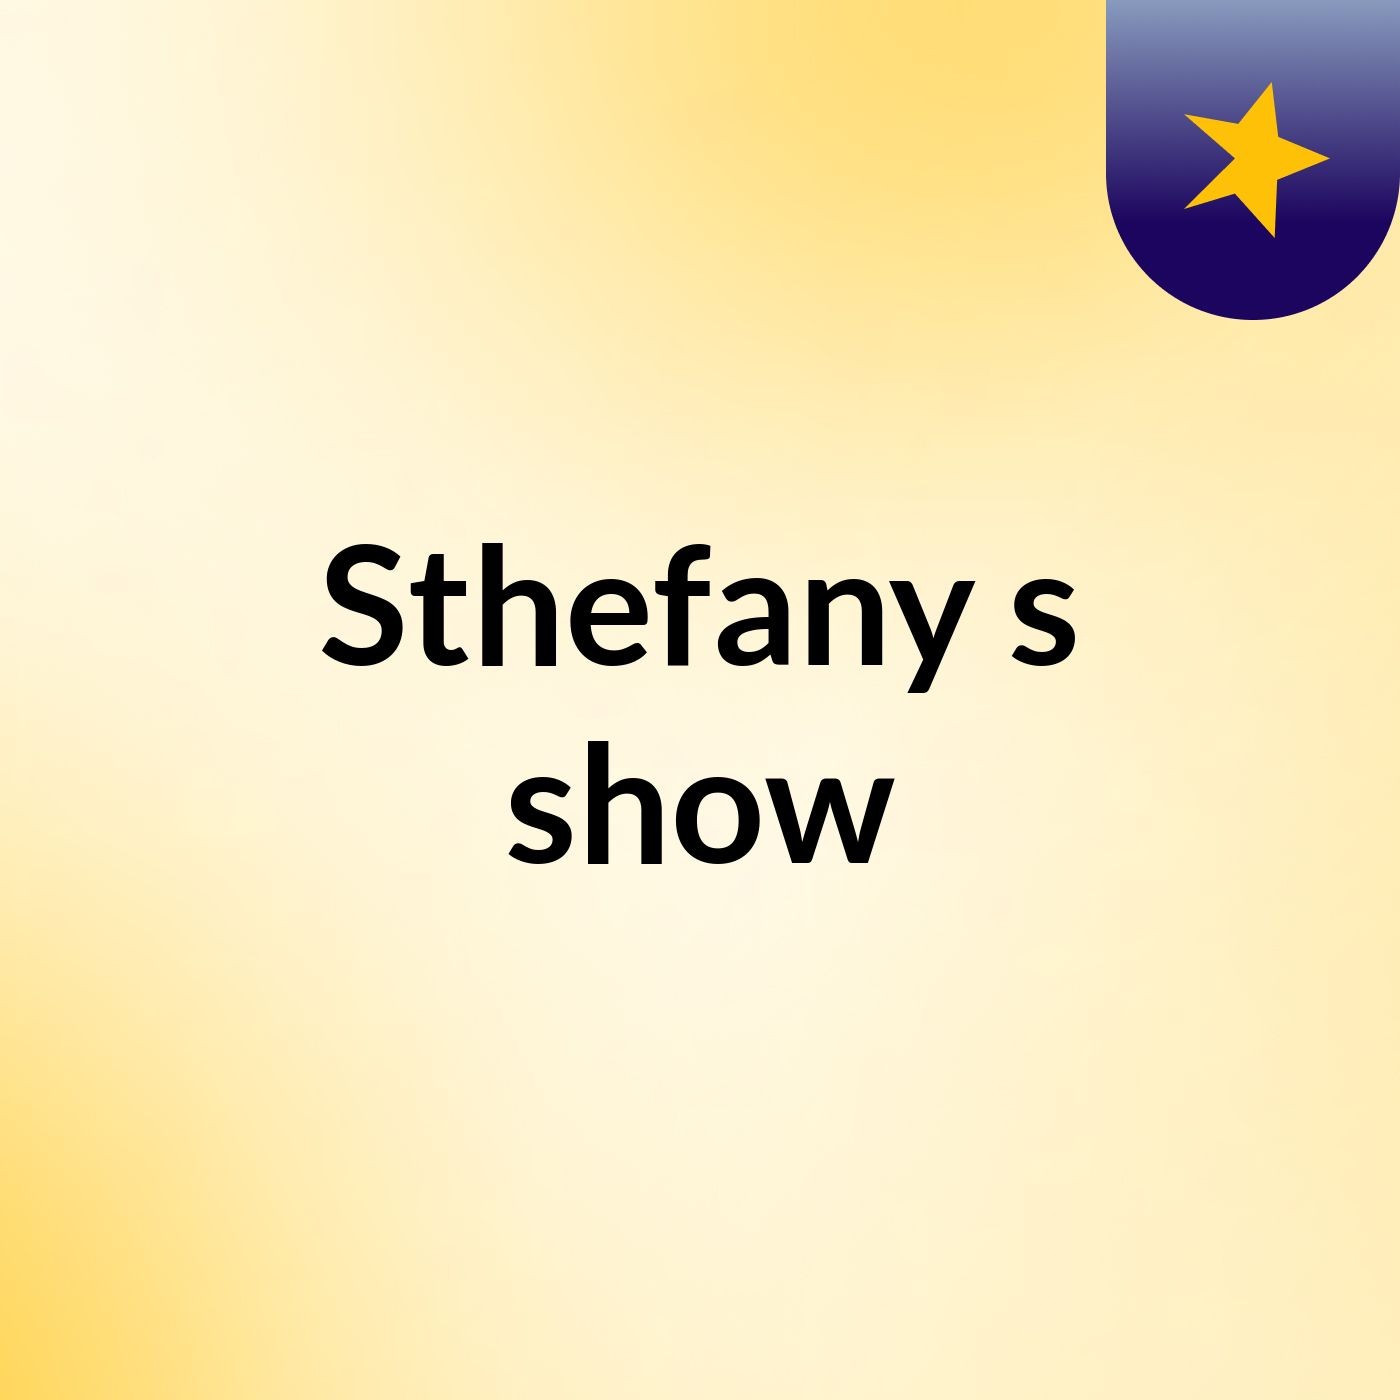 Sthefany's show